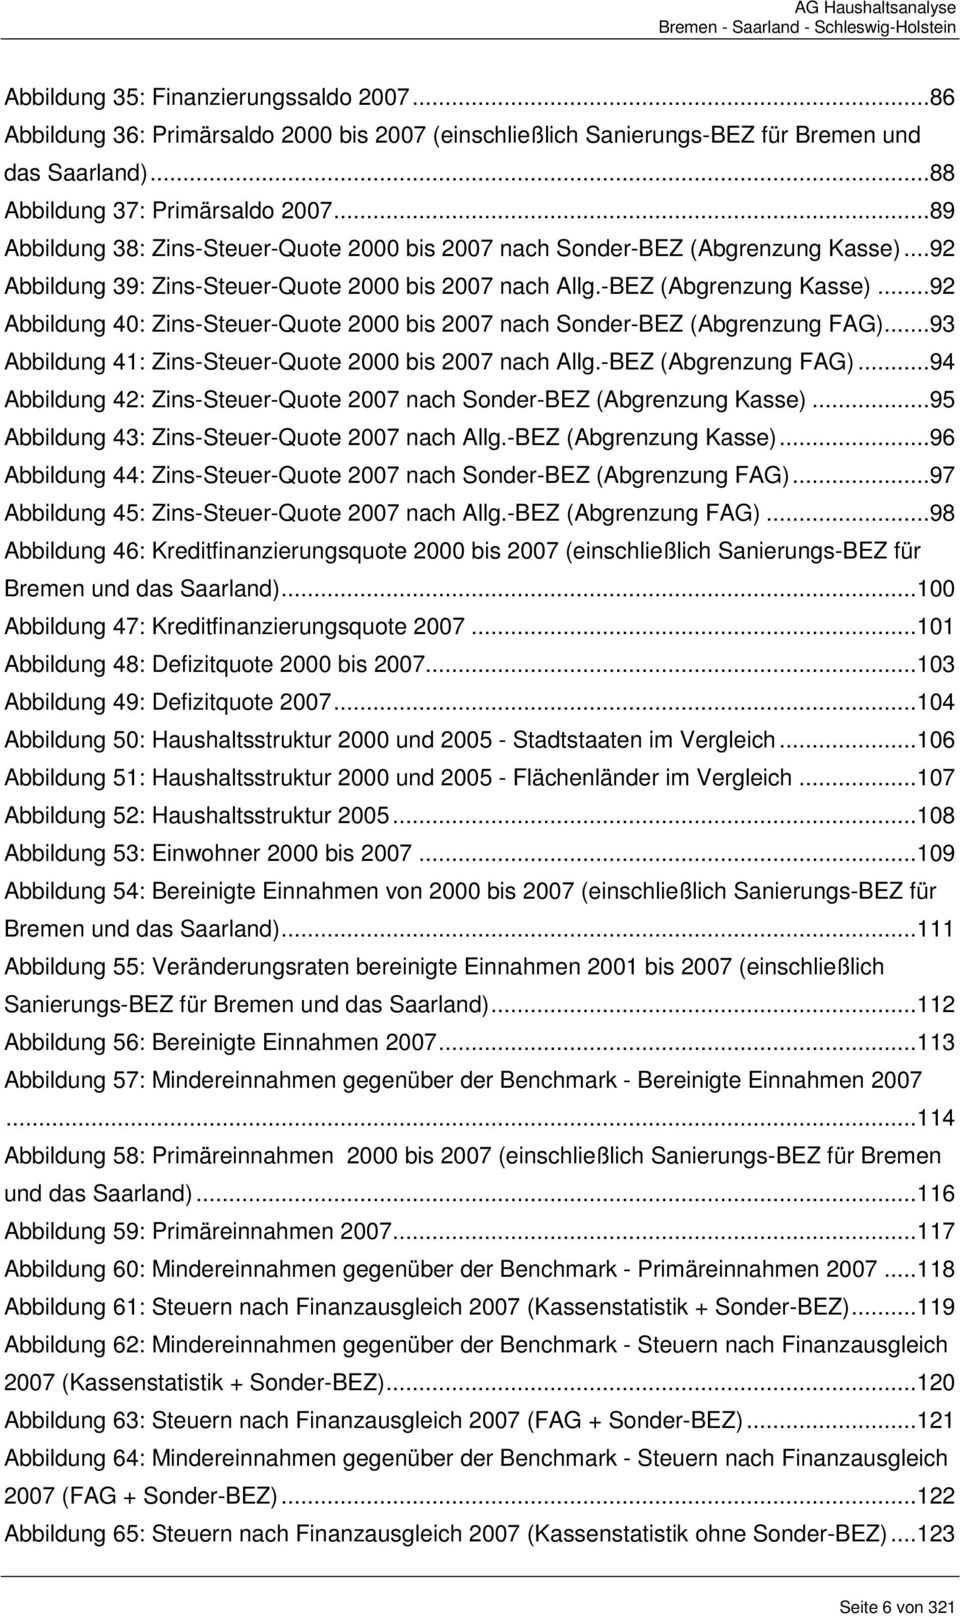 ..93 Abbildung 41: Zins-Steuer-Quote 2000 bis 2007 nach Allg.-BEZ (Abgrenzung FAG)...94 Abbildung 42: Zins-Steuer-Quote 2007 nach Sonder-BEZ (Abgrenzung Kasse).